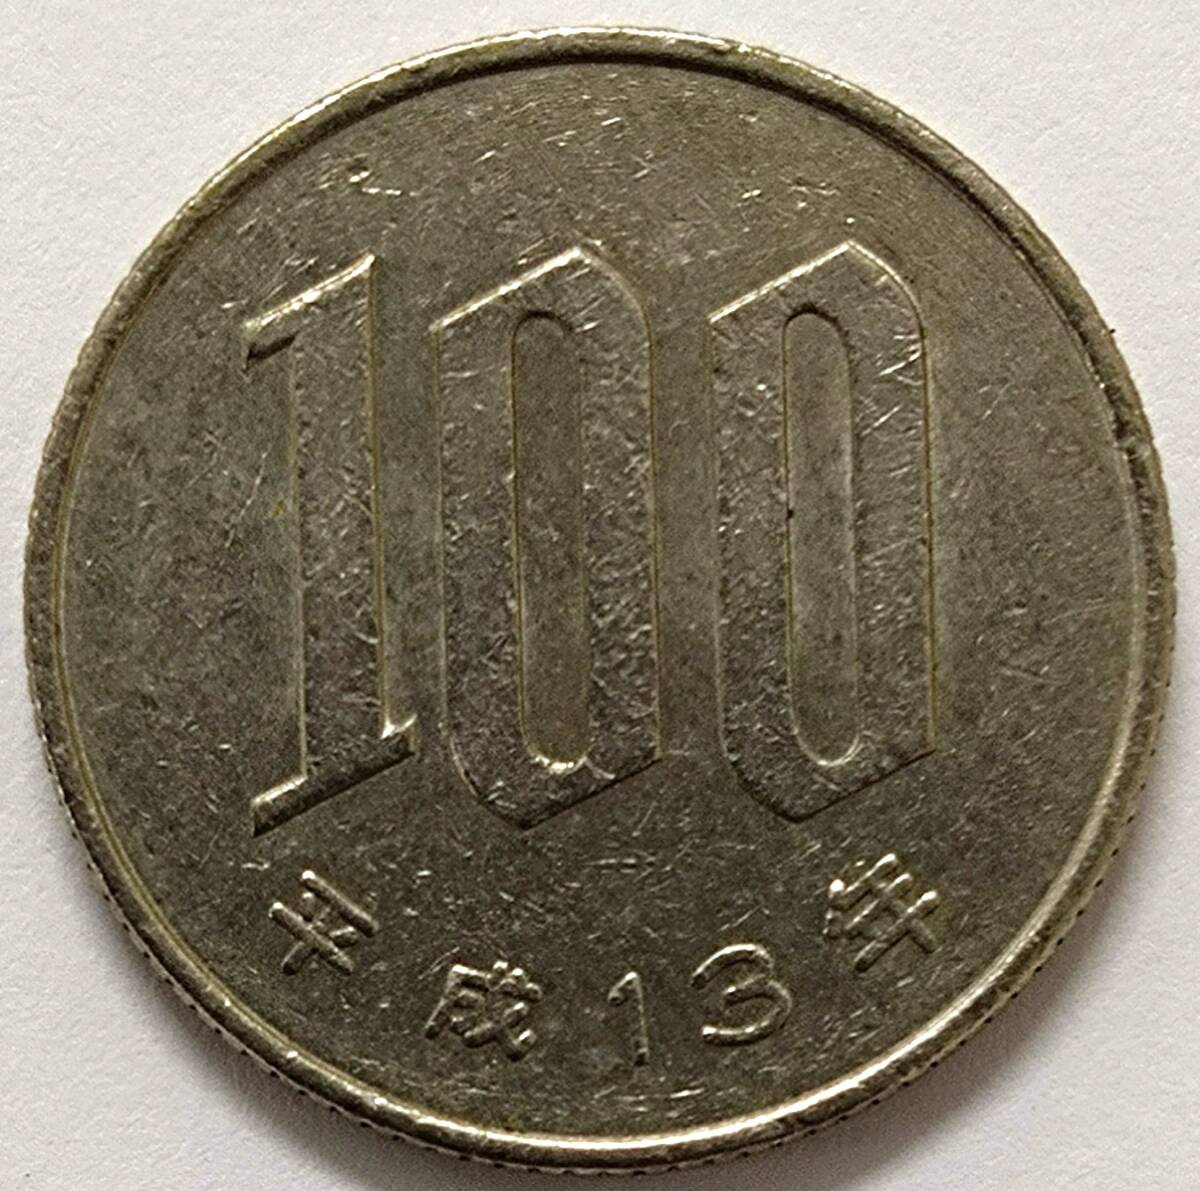 ◇ 平成13年・平成14年 100円硬貨 2枚セット ◇